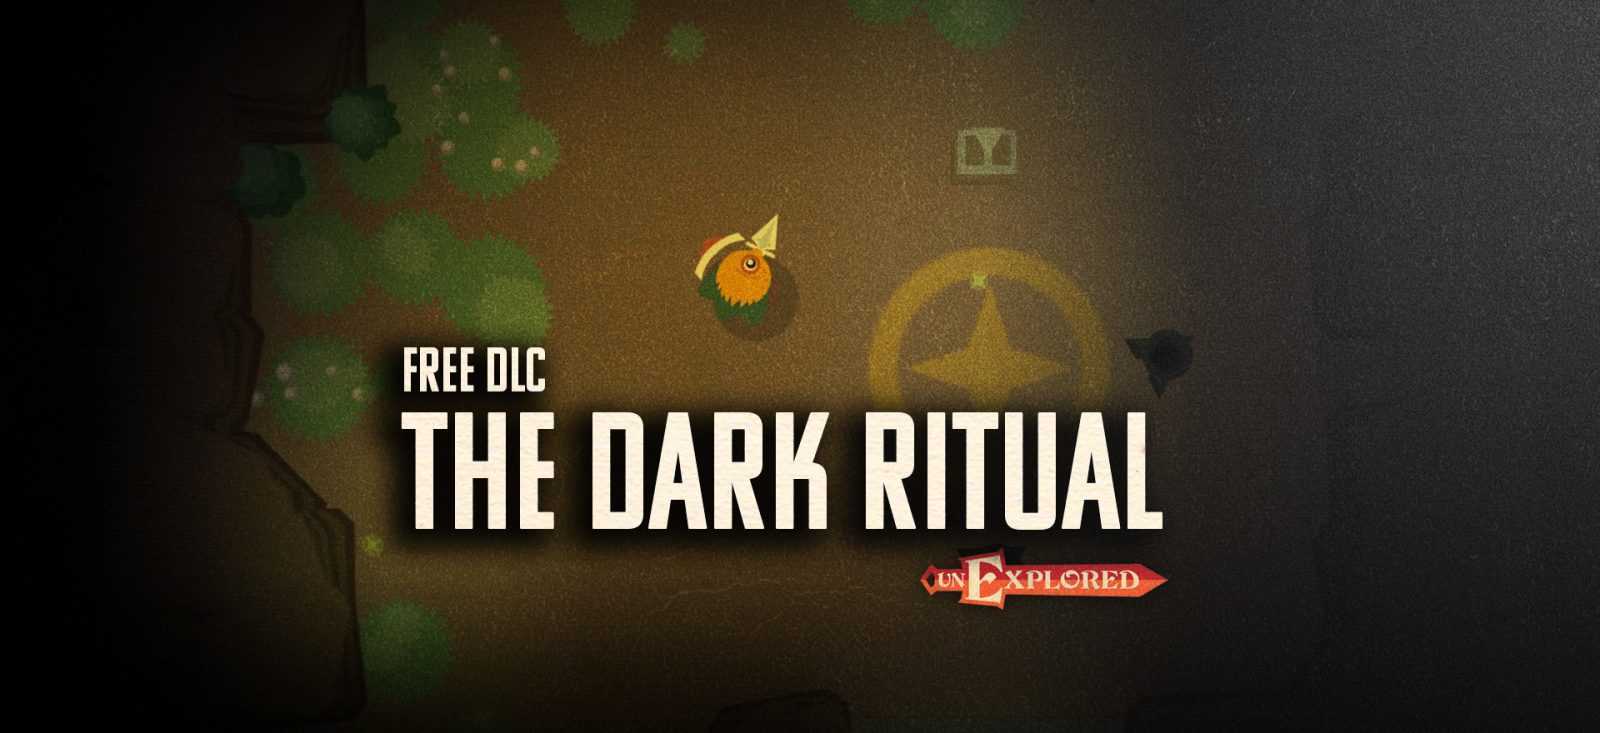 Unexplored The Dark Ritual Free Download